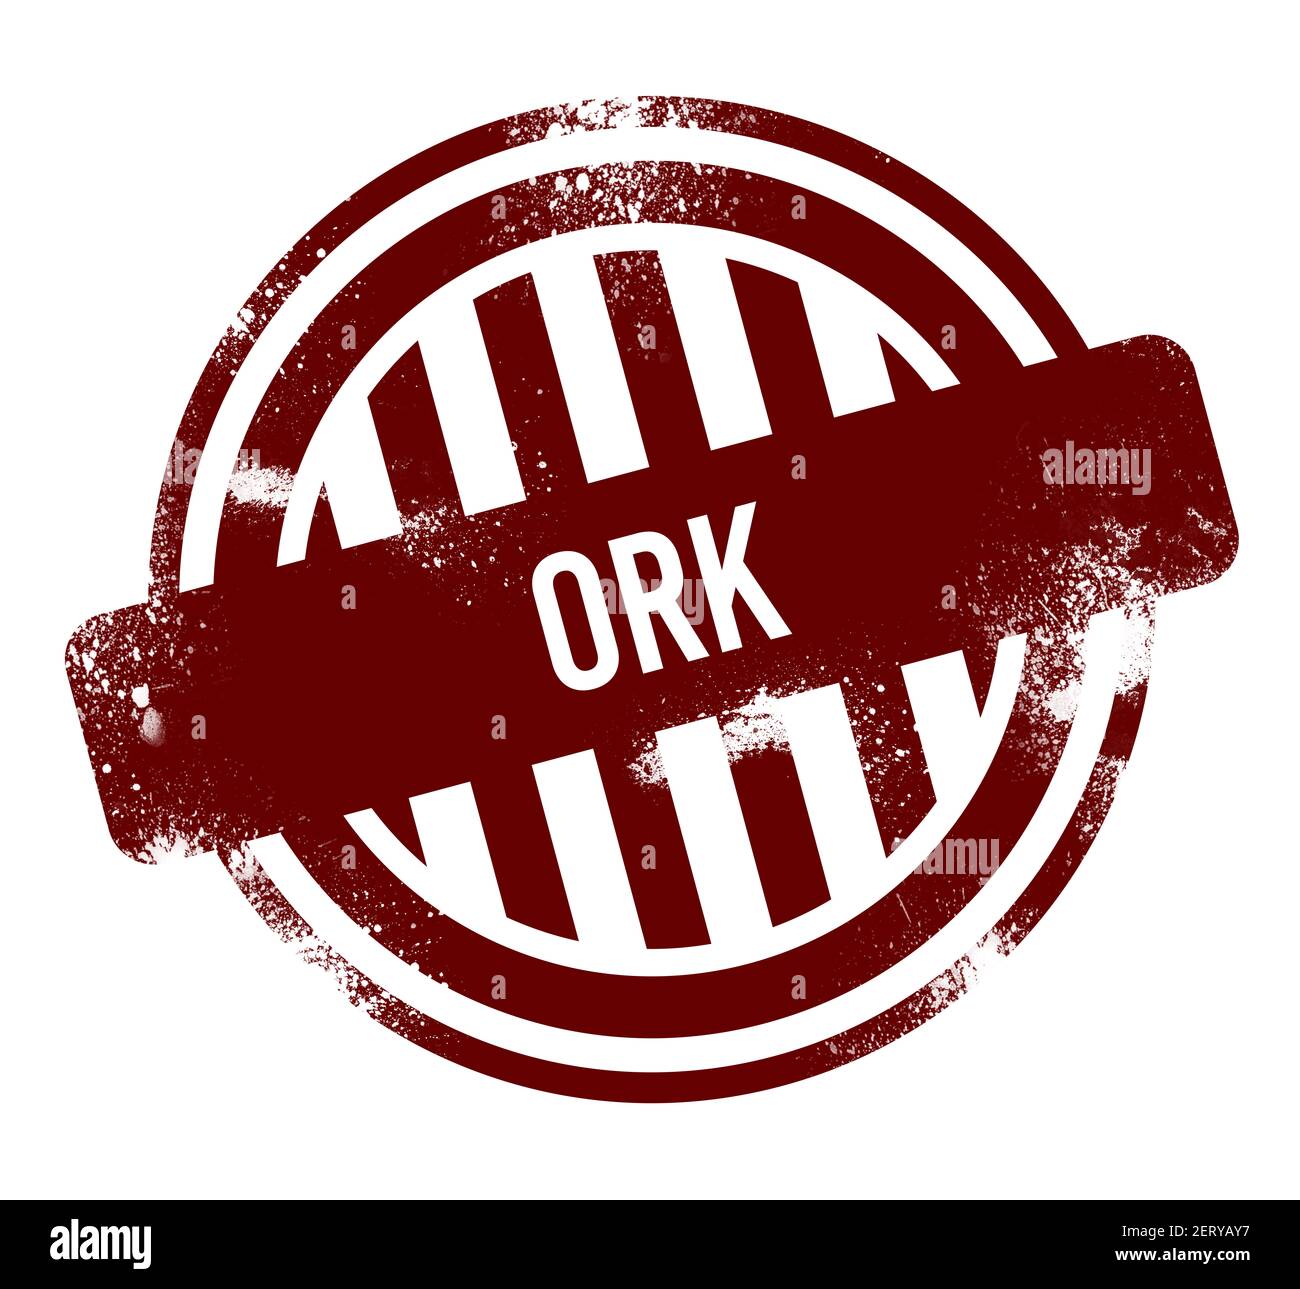 Ork - red round grunge button, stamp Stock Photo